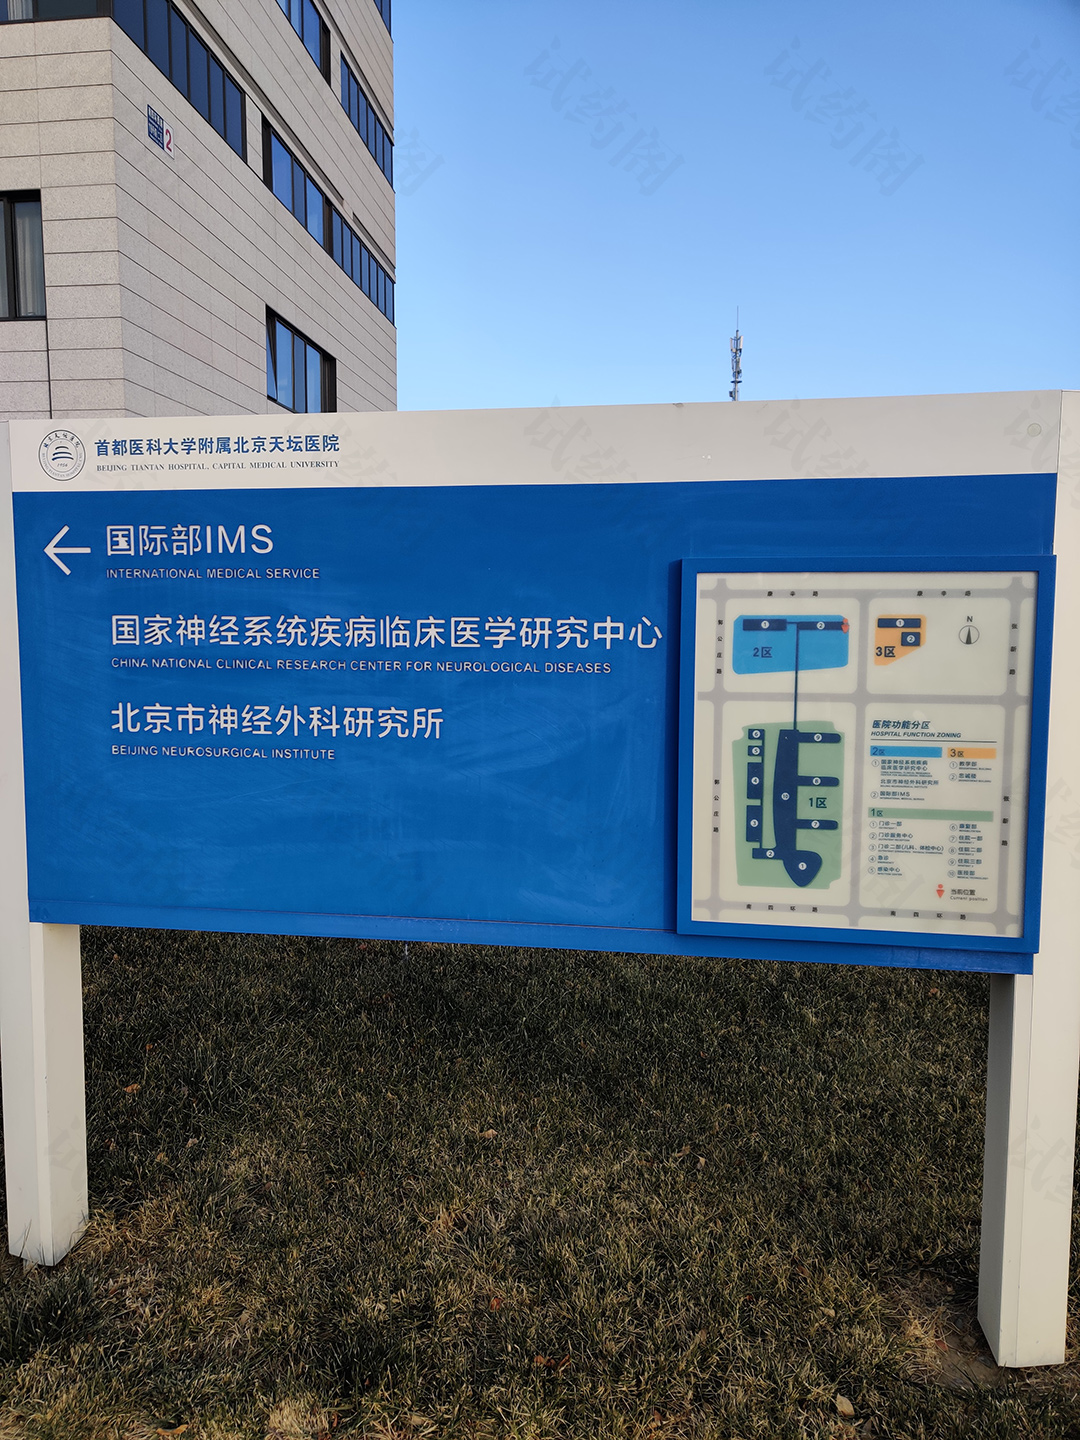 北京天坛医院国际部IMS指引